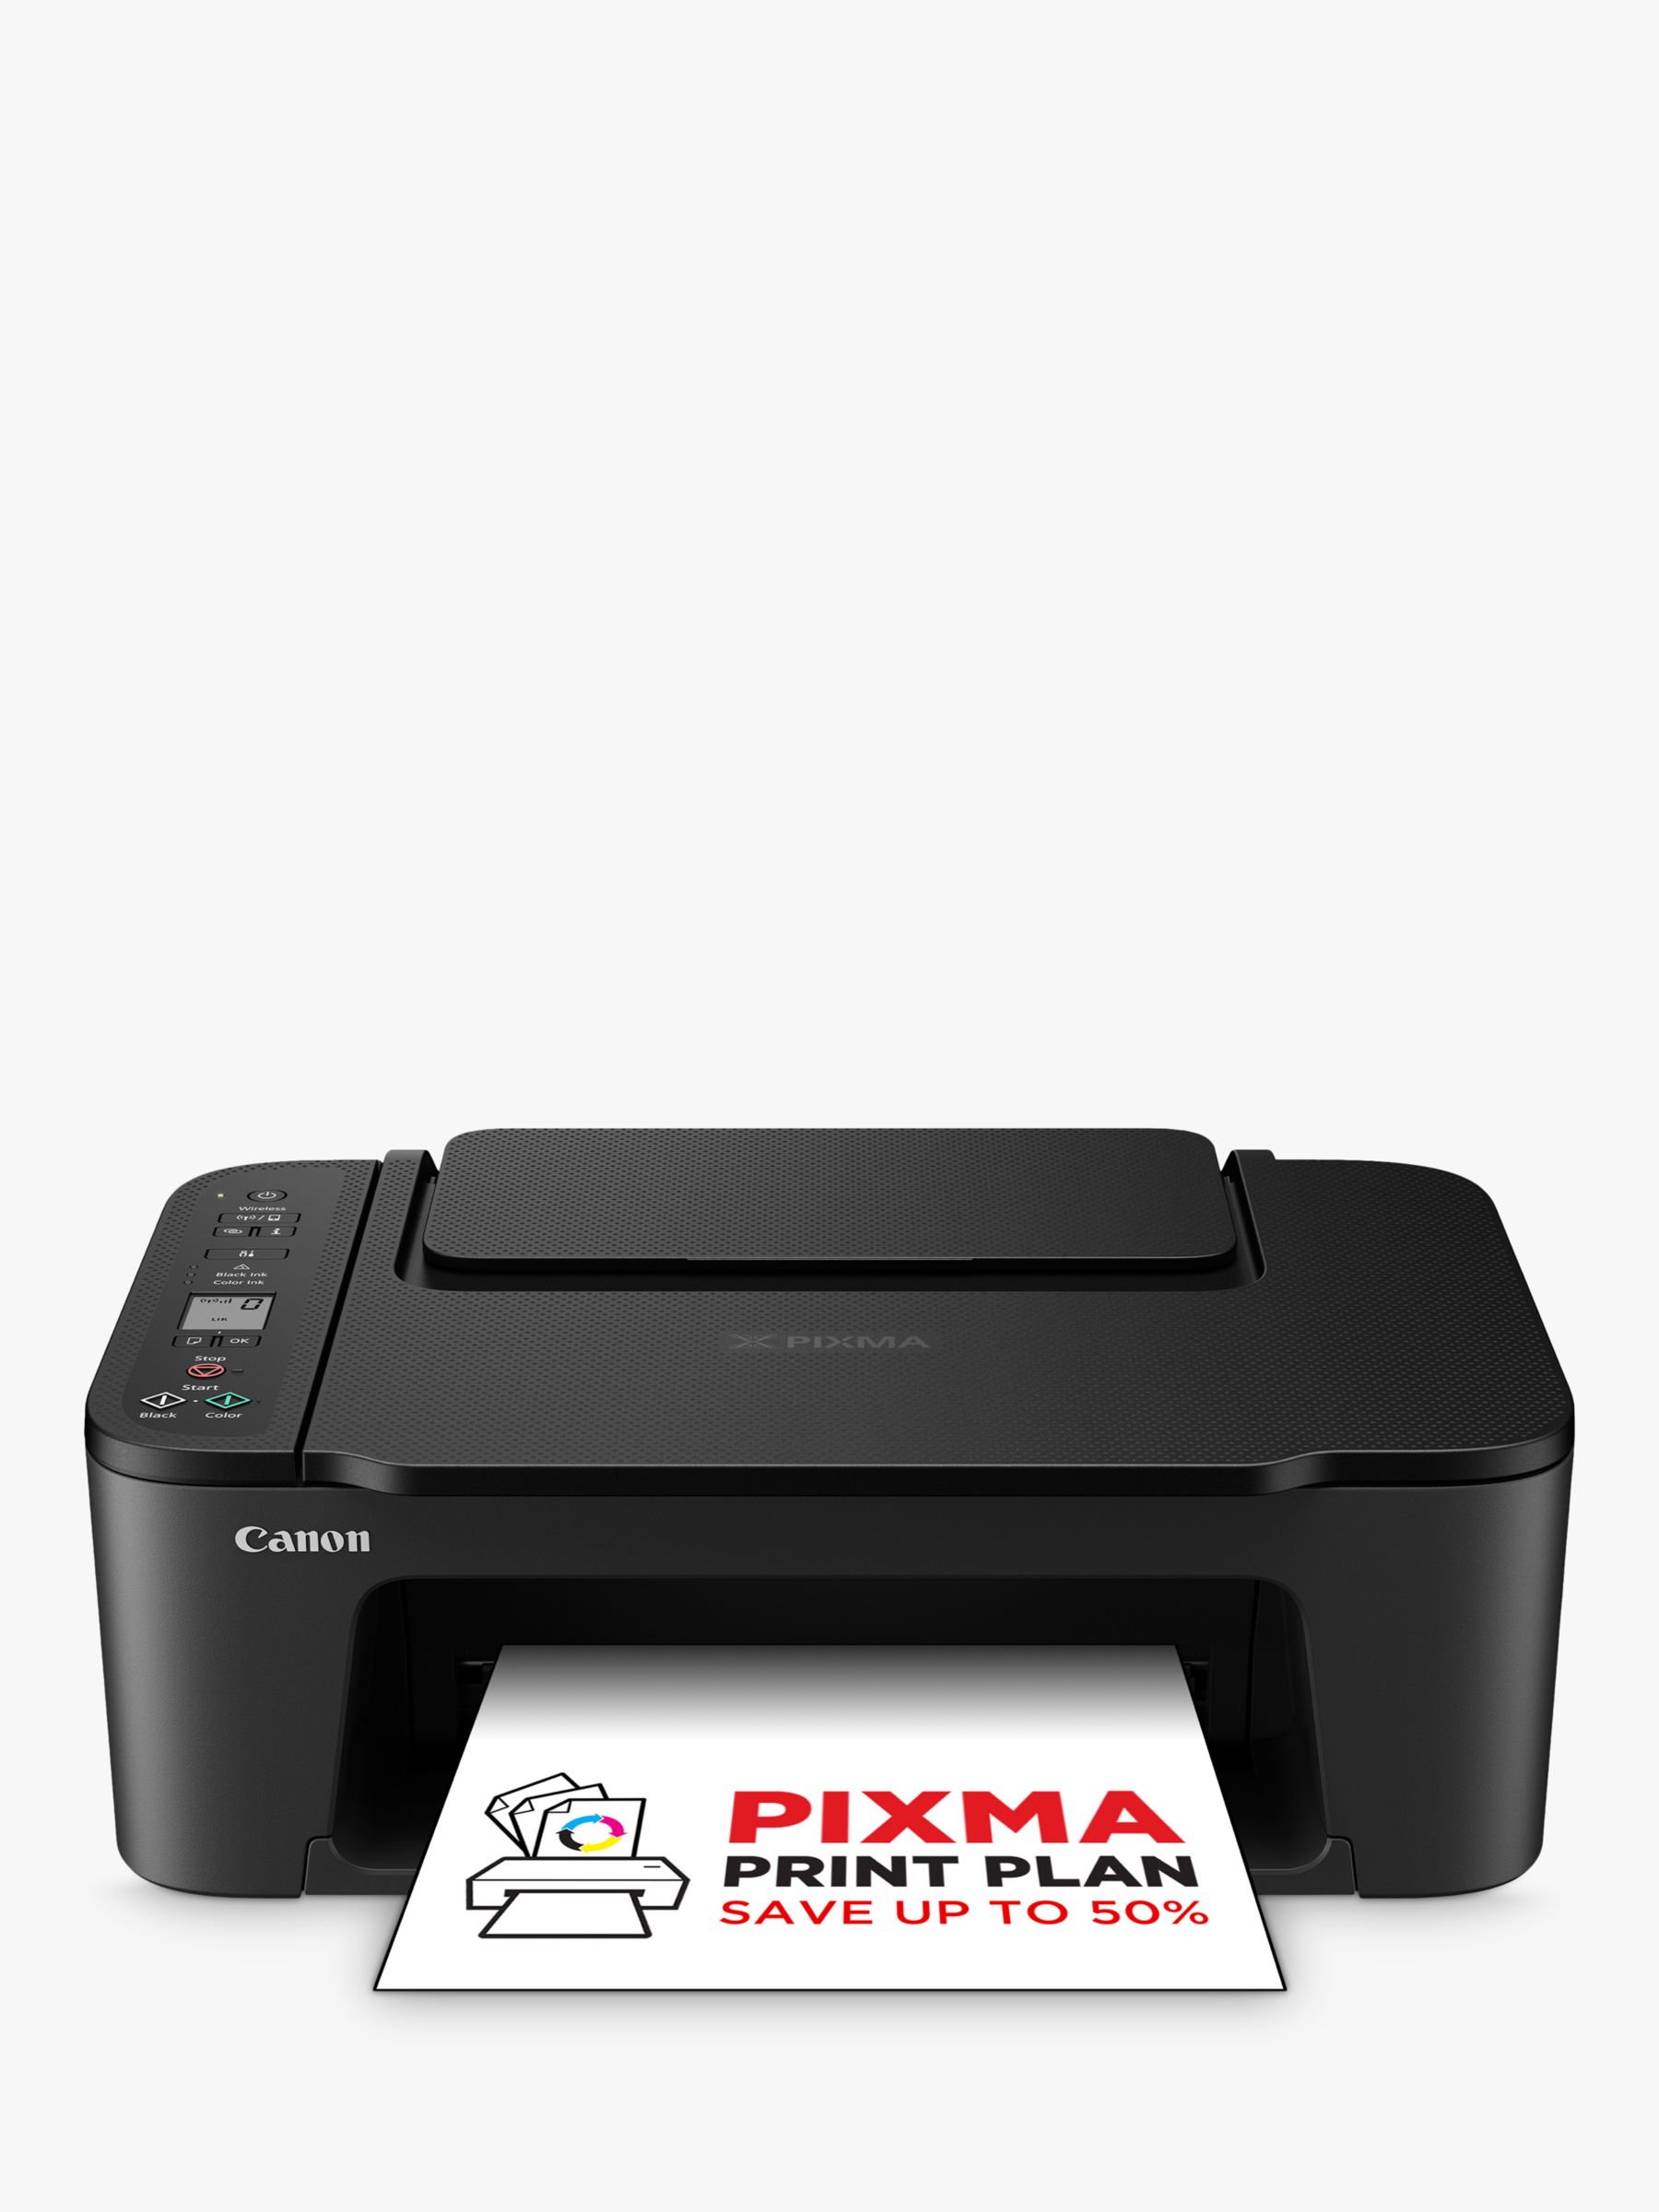 Canon PIXMA TS3550i All-in-One Wireless Black Wi-Fi Printer